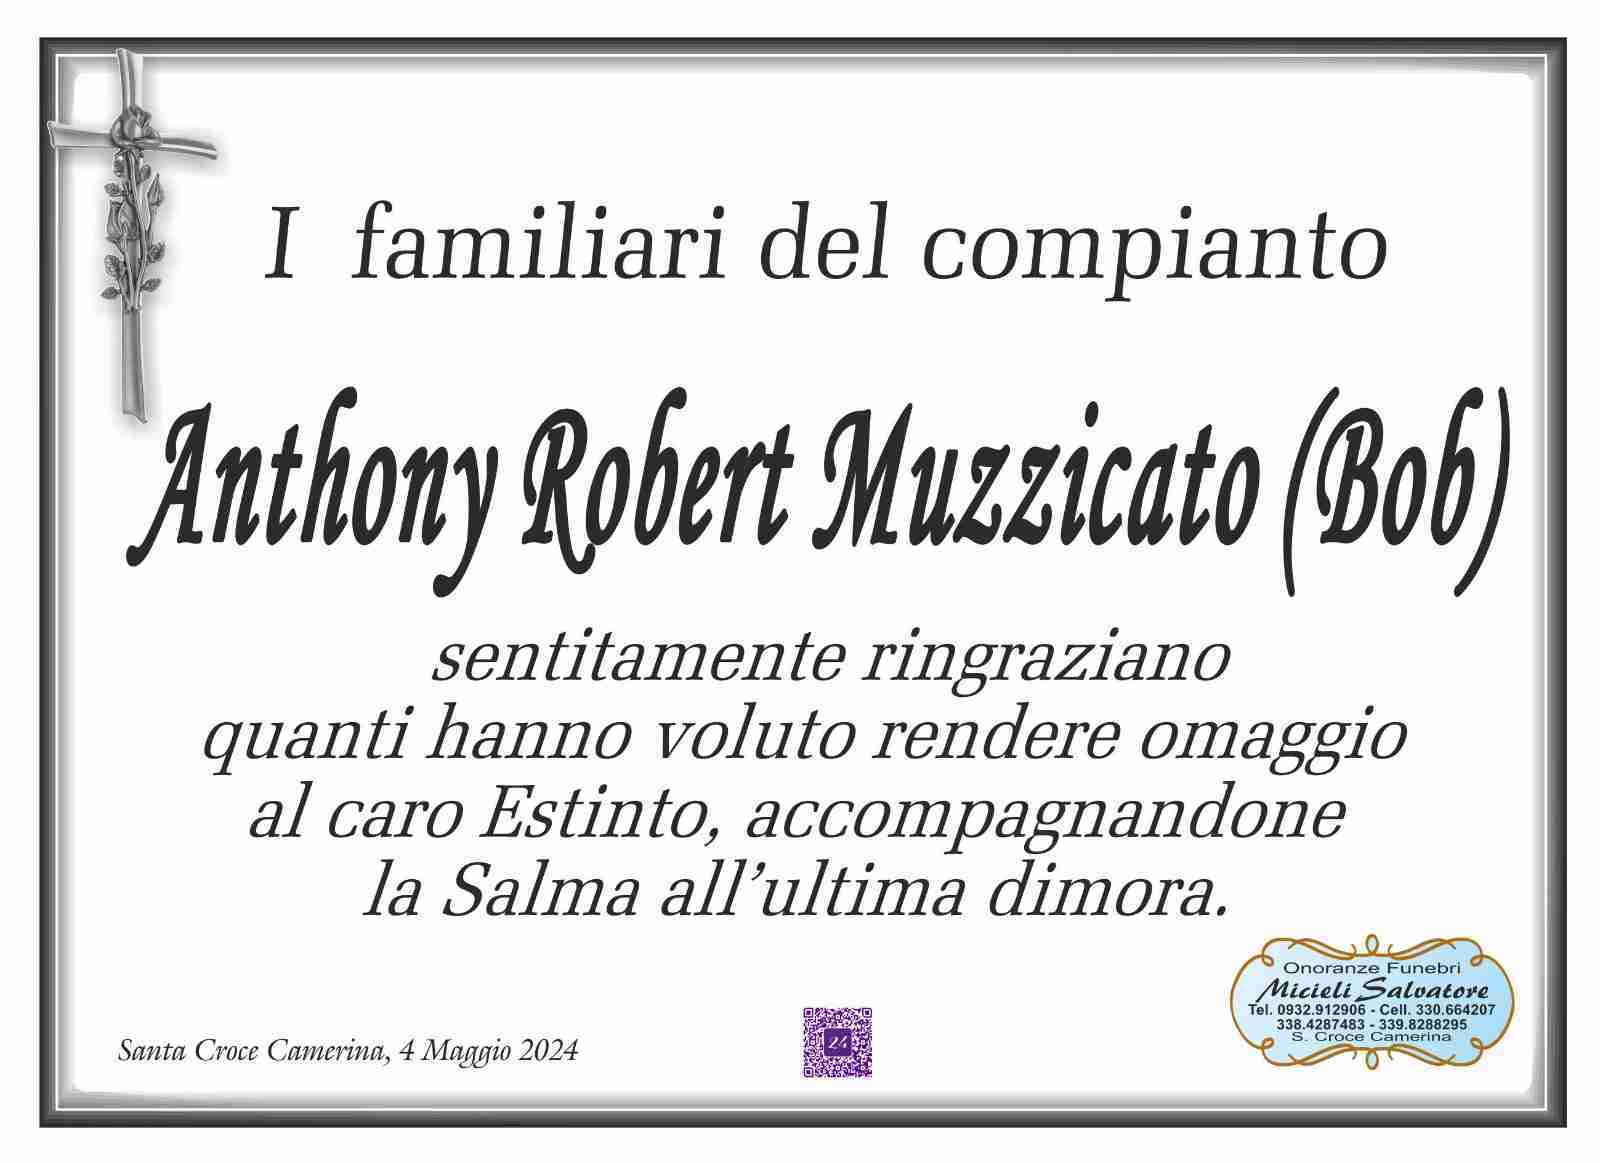 Anthony Robert Muzzicato (Bob)